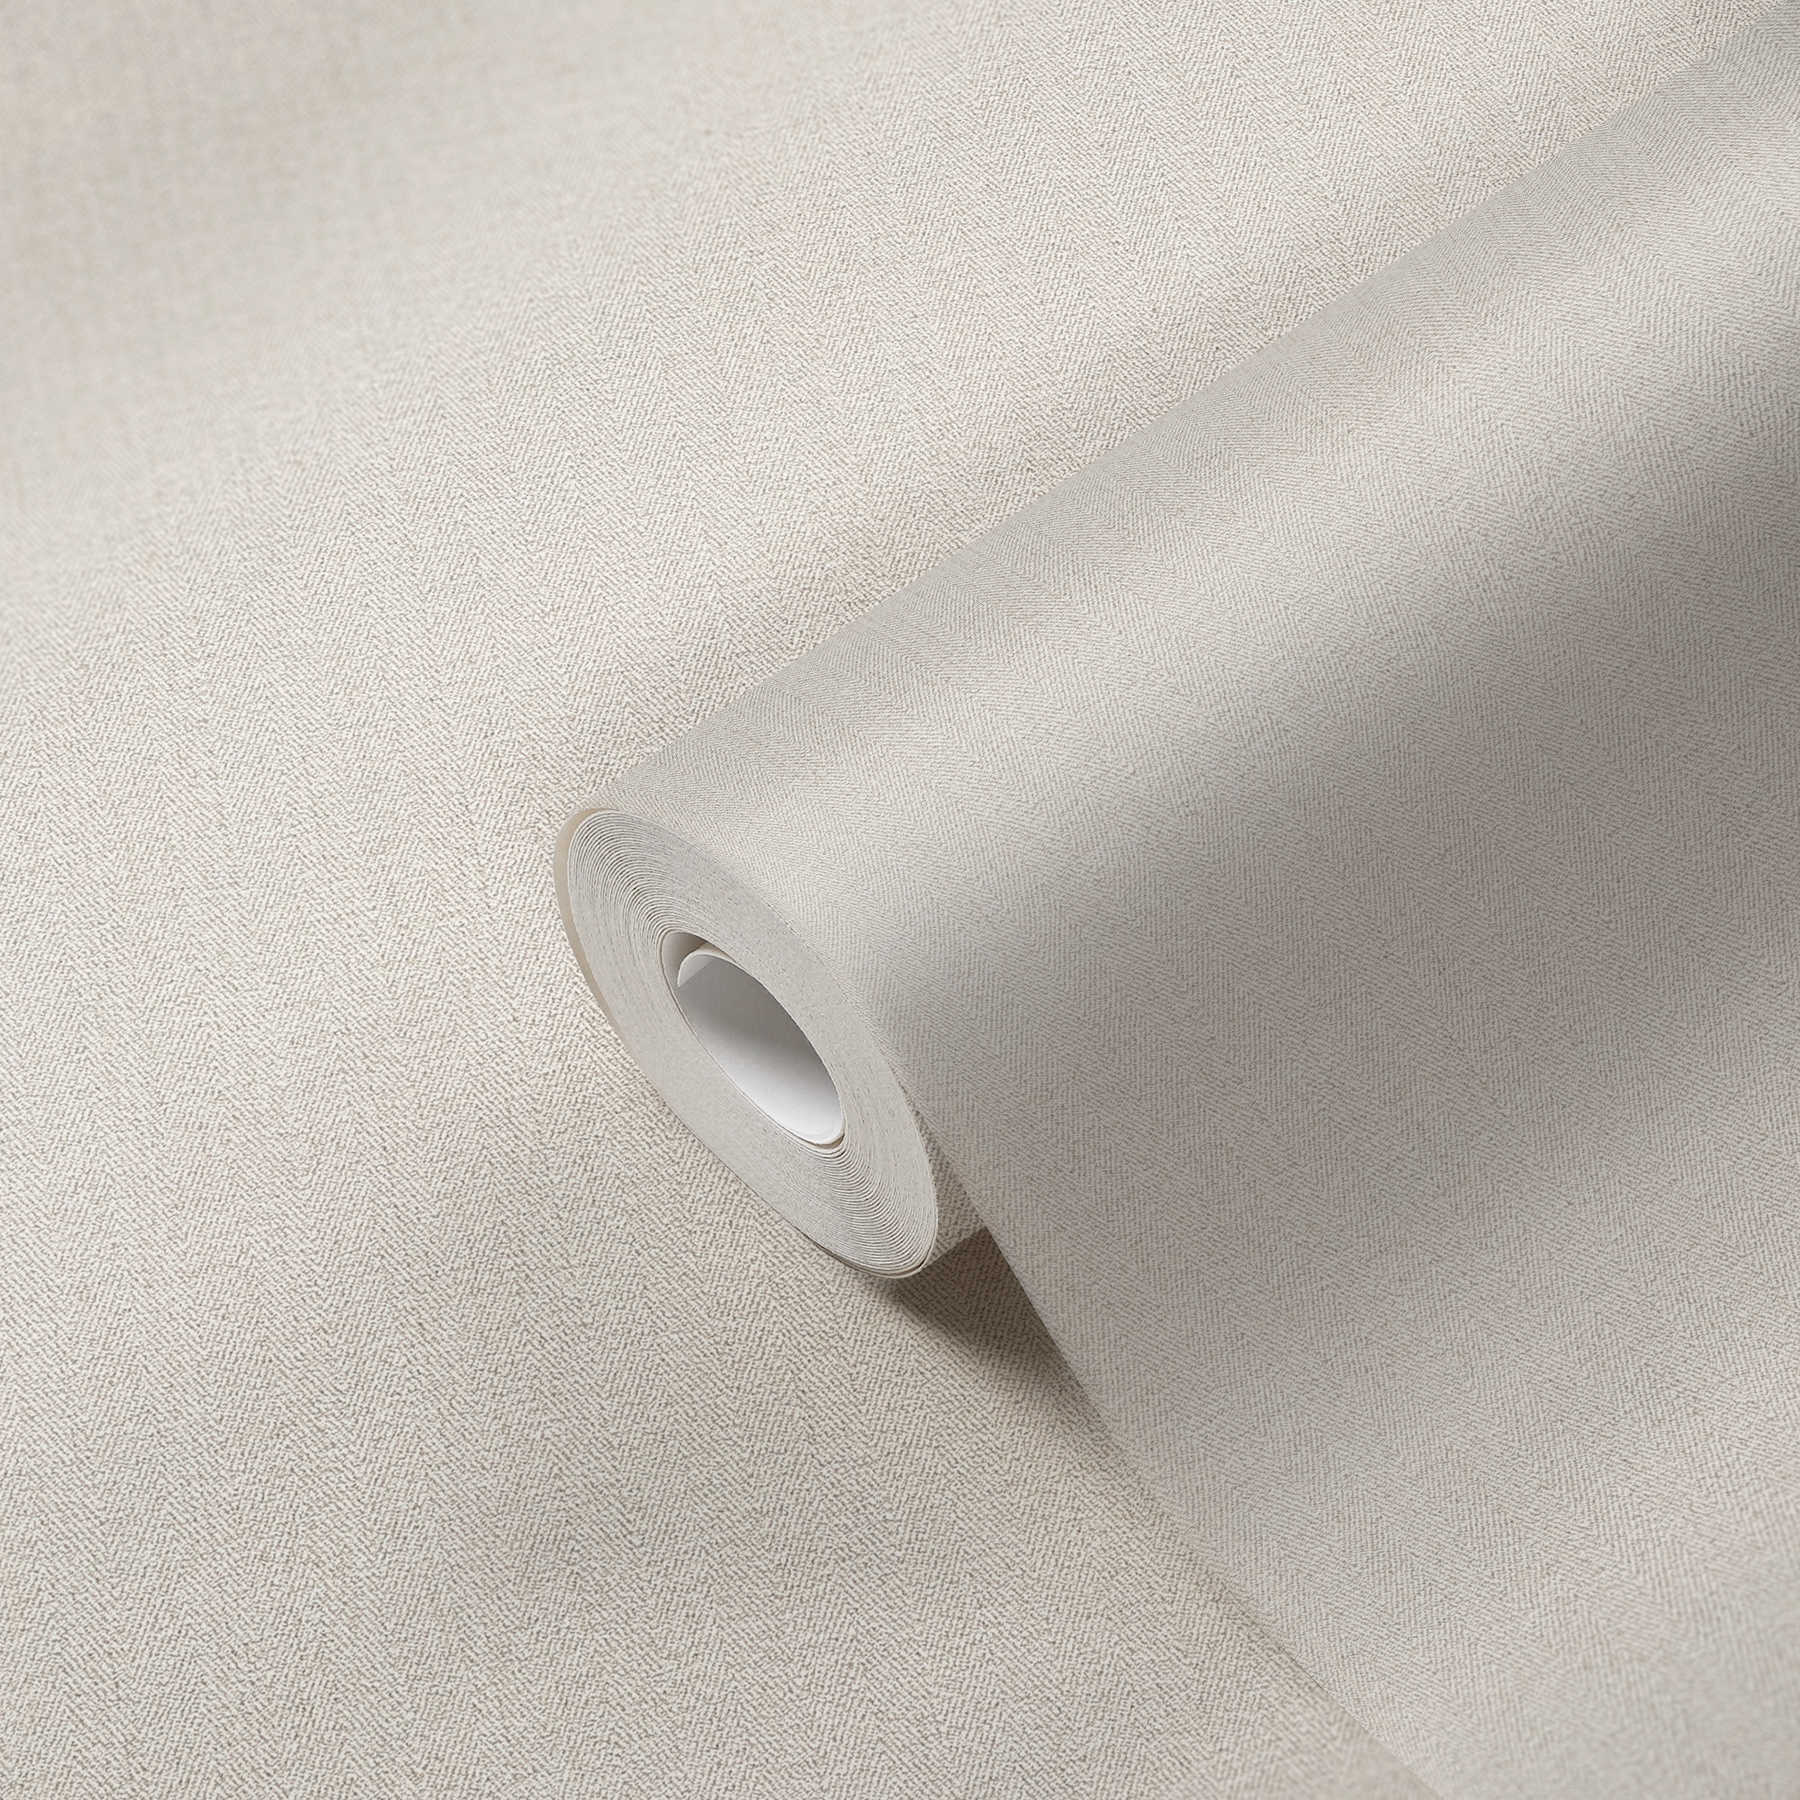             Papel pintado no tejido con aspecto textil y diseño en espiga - beige
        